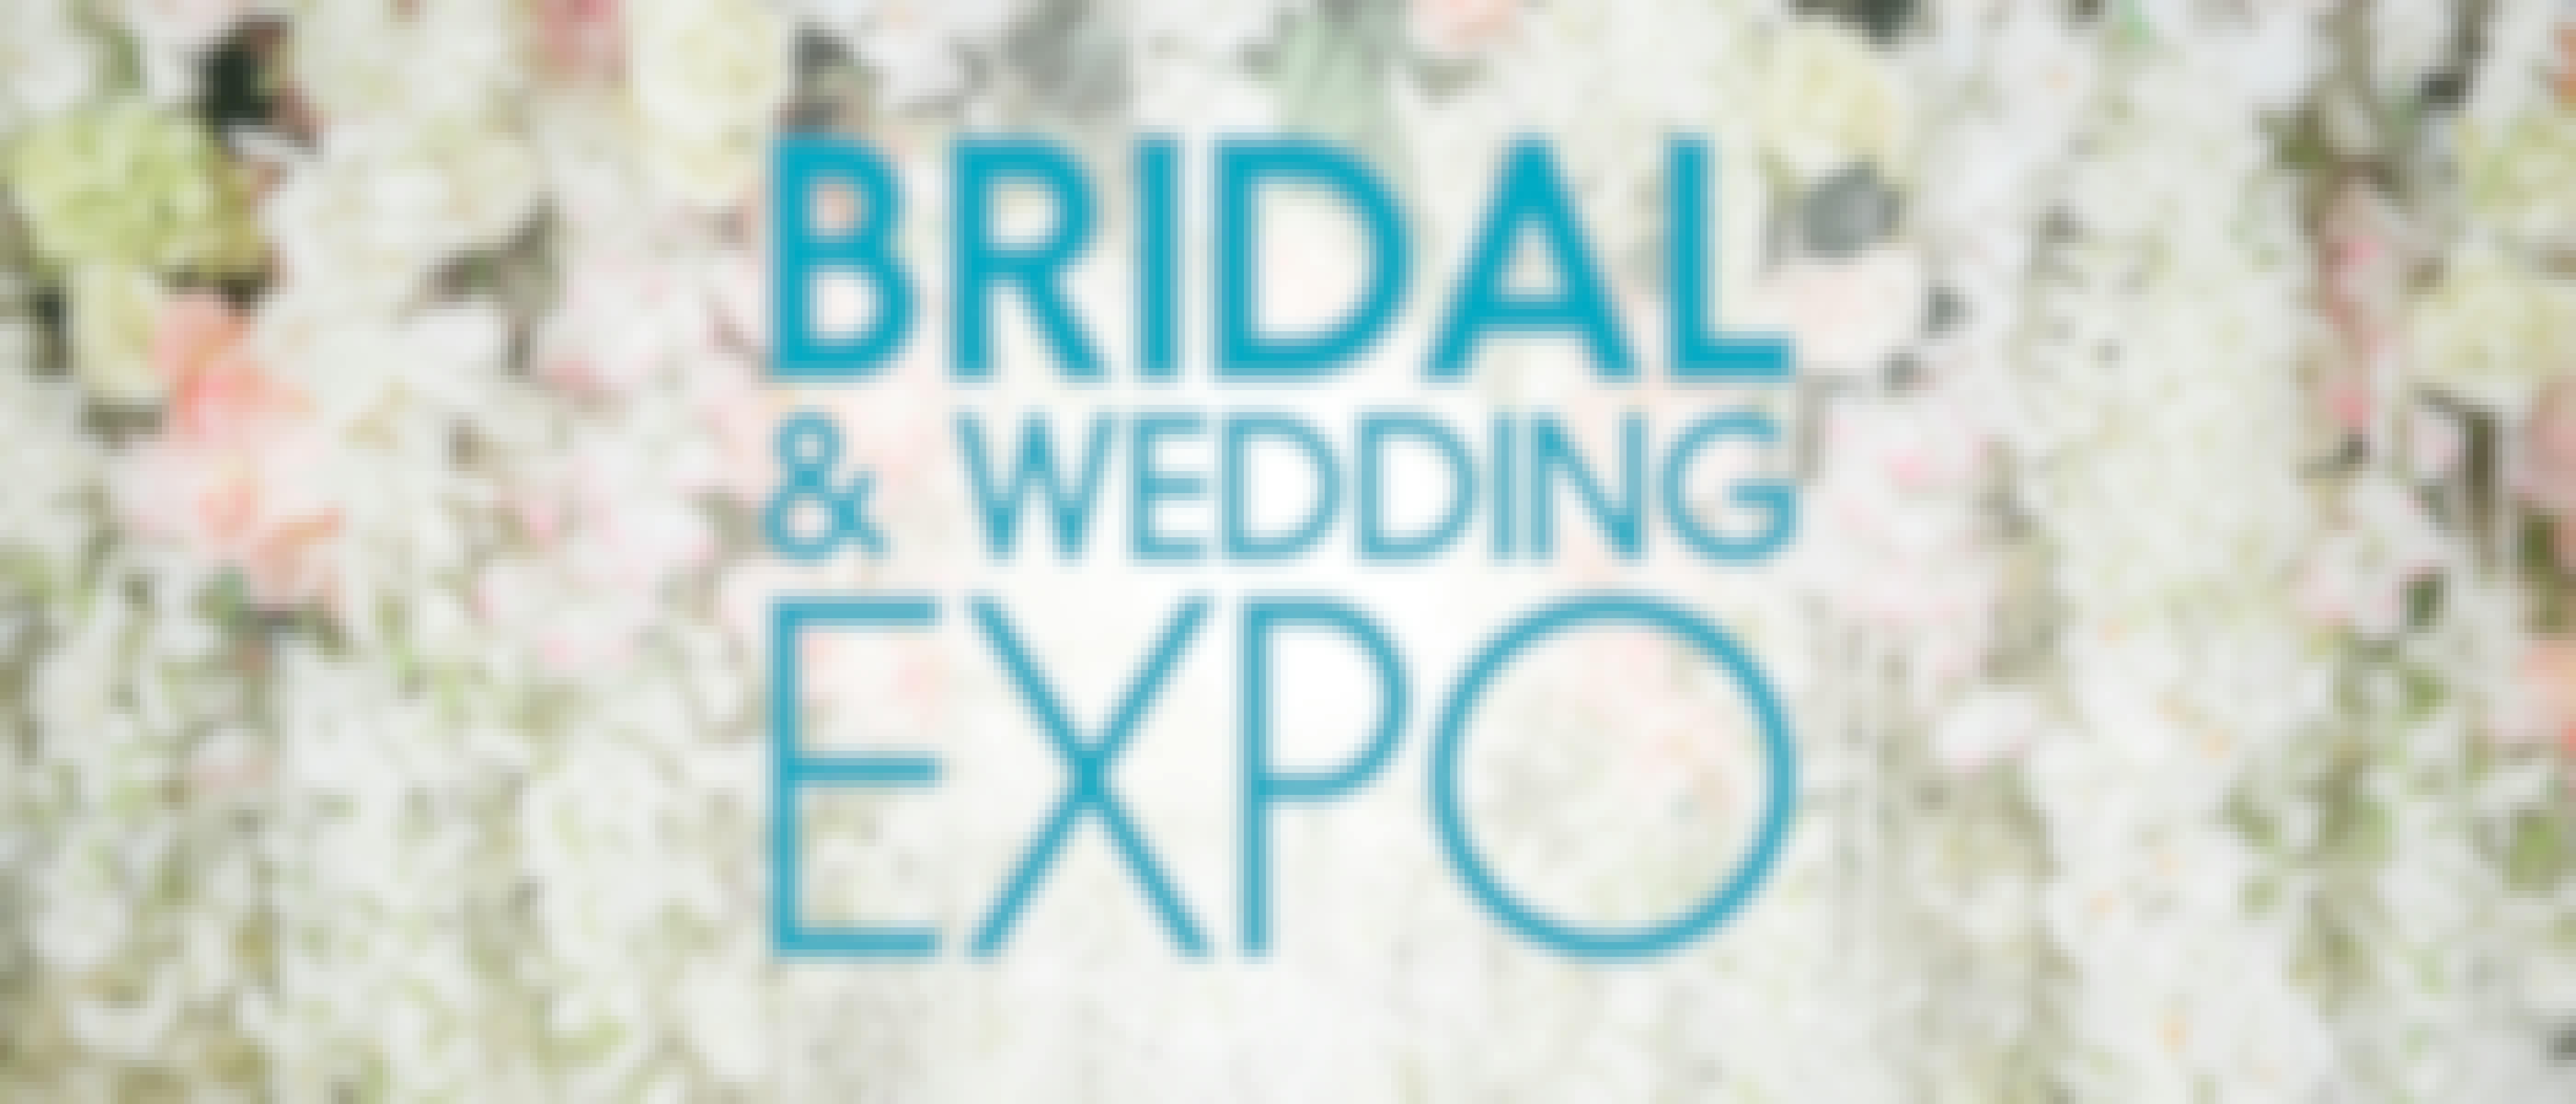 Denver Bridal & Wedding Expo